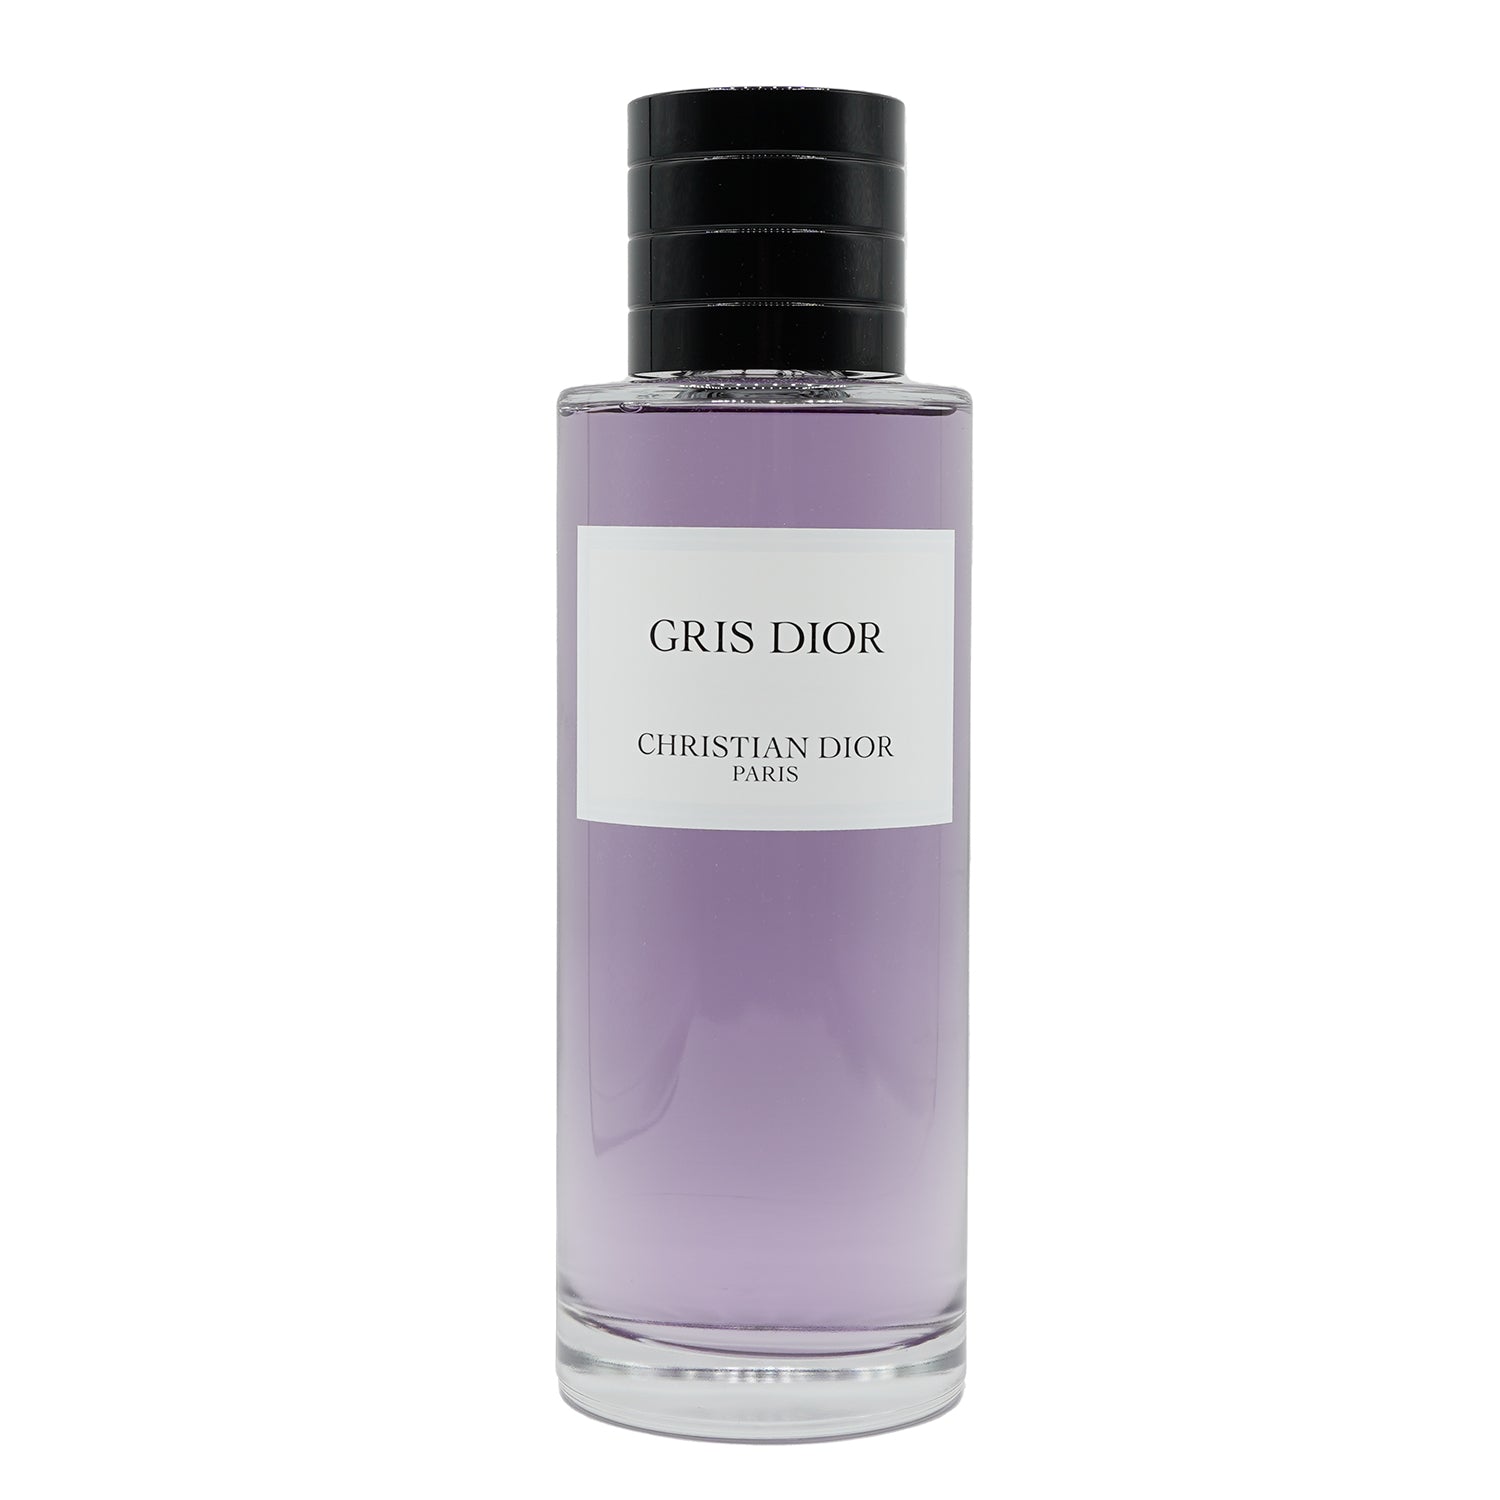 Christian Dior | Gris Dior bottling 